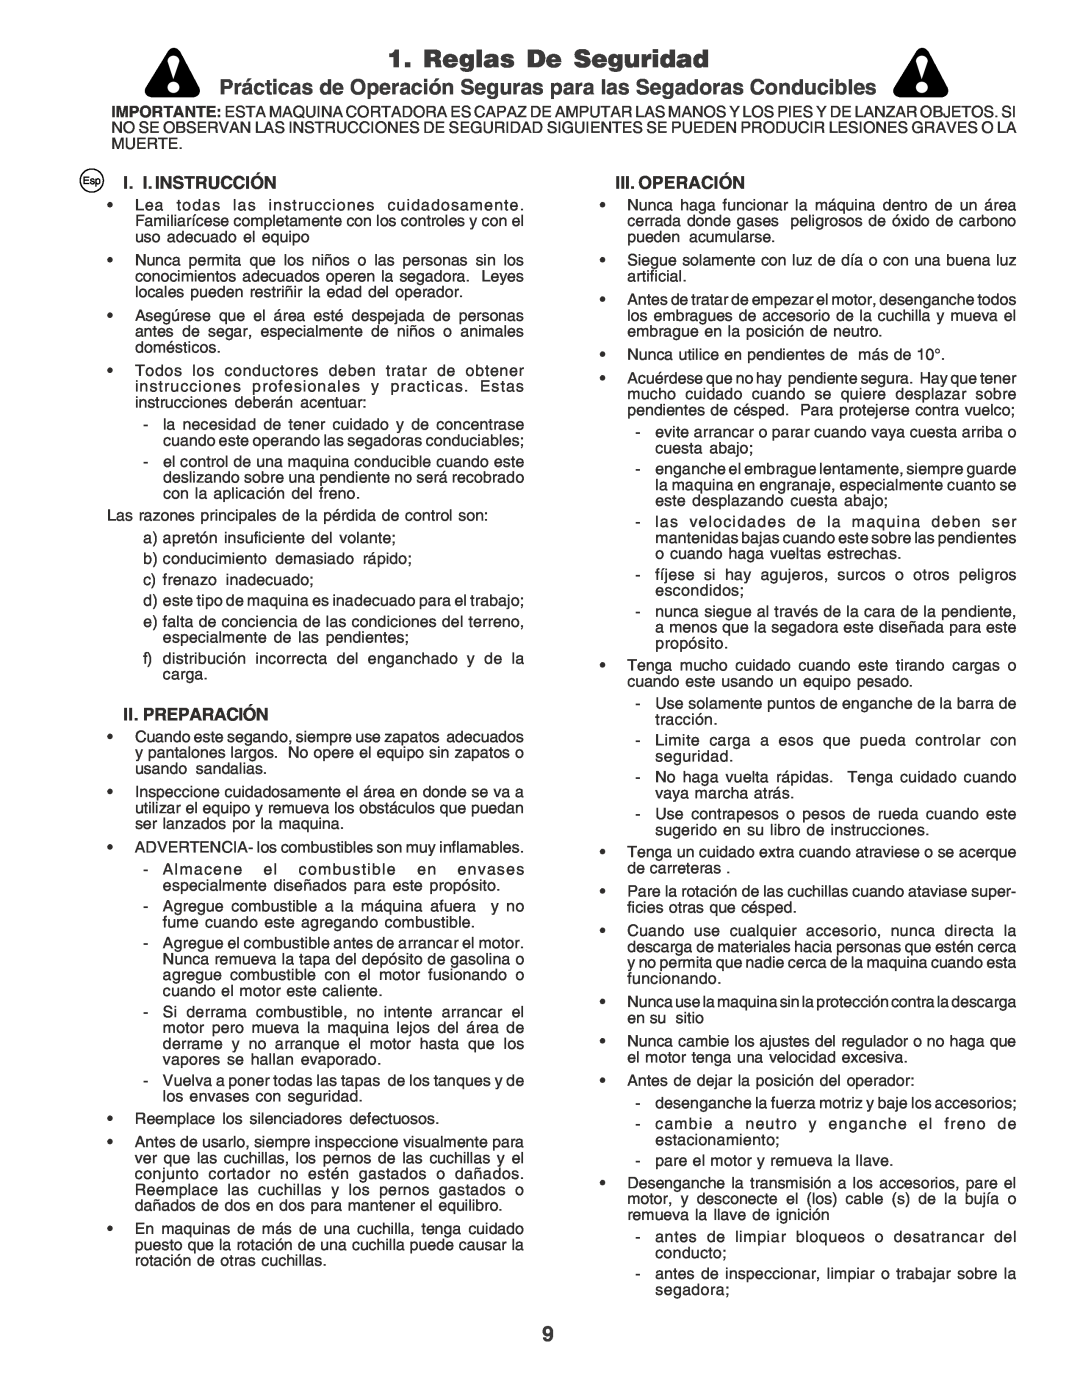 Husqvarna CTH170 Reglas De Seguridad, Prácticas de Operación Seguras para las Segadoras Conducibles, I. I. Instrucción 